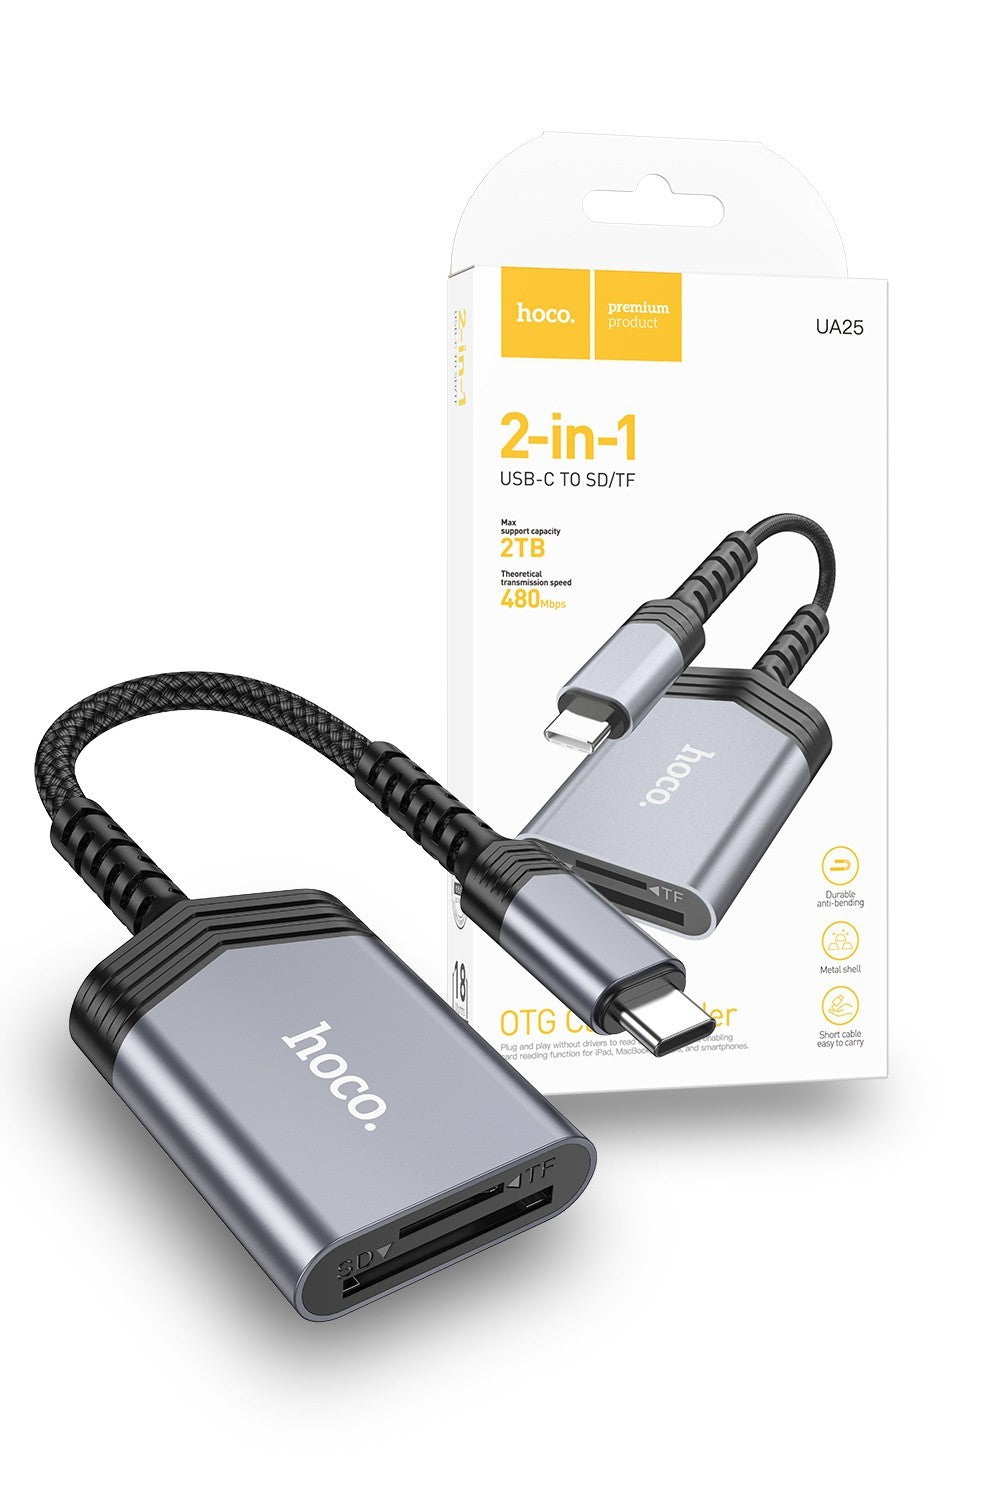 Hoco USB-C Card Reader to USB 2-in-1 OTG Adapter SD TF Reader UA25C